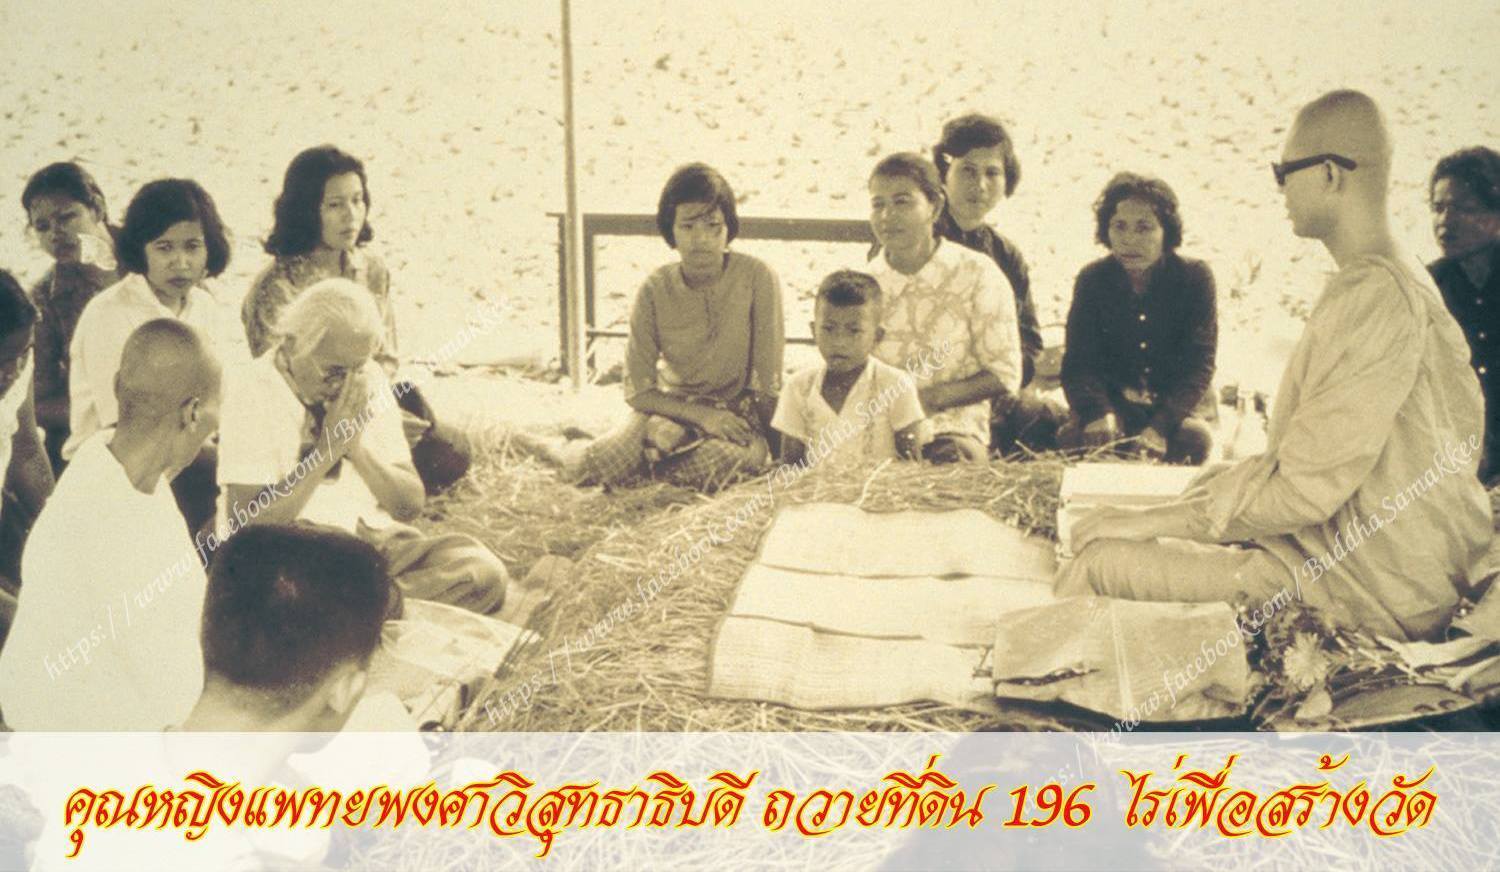 Začátky byly opravdu skromné - Phrathepyanmahamuni promlouvá k věřícím na slámě